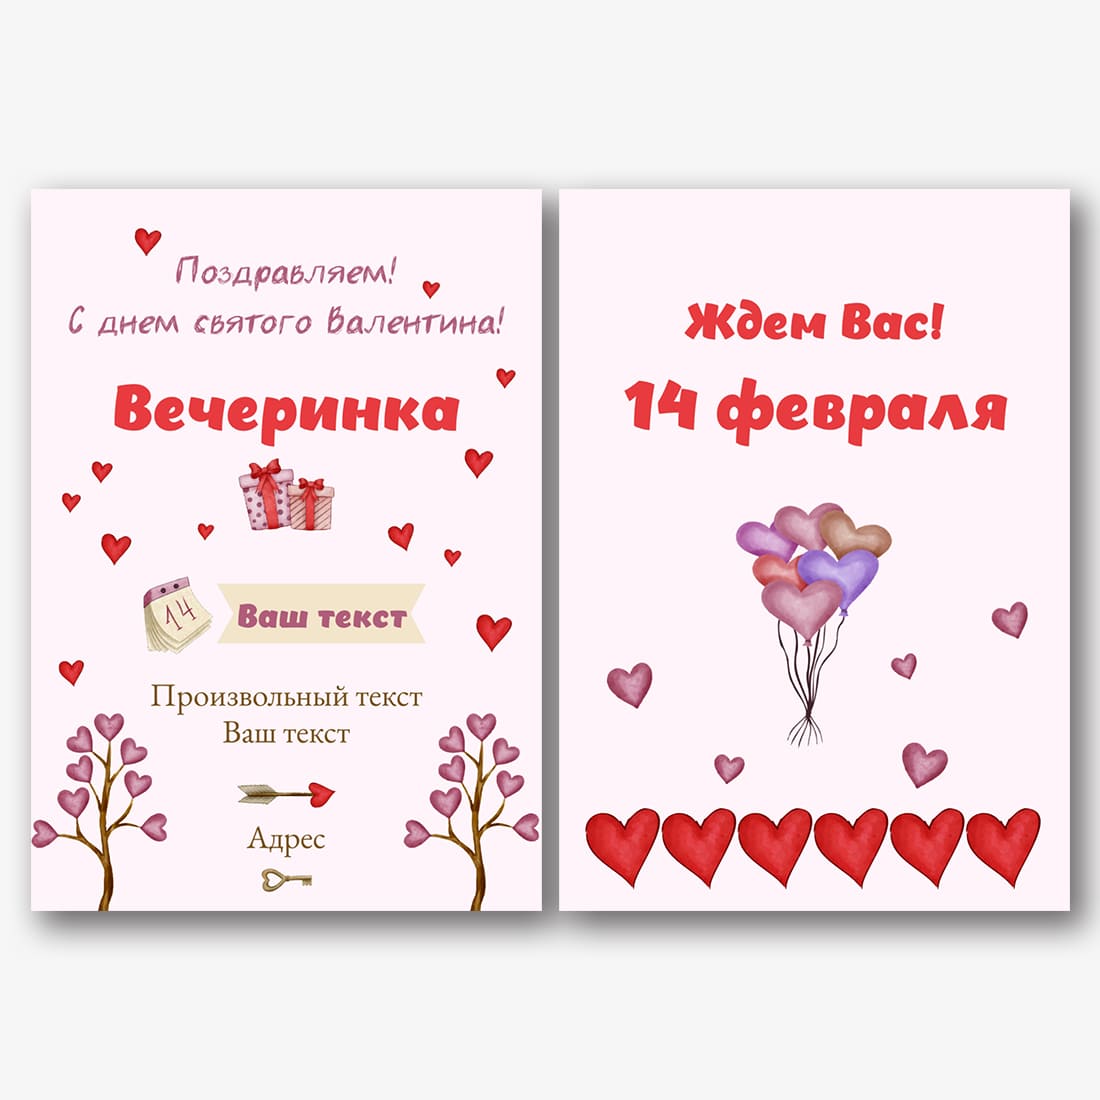 Шаблон открытки с днем святого Валентина | ID23030